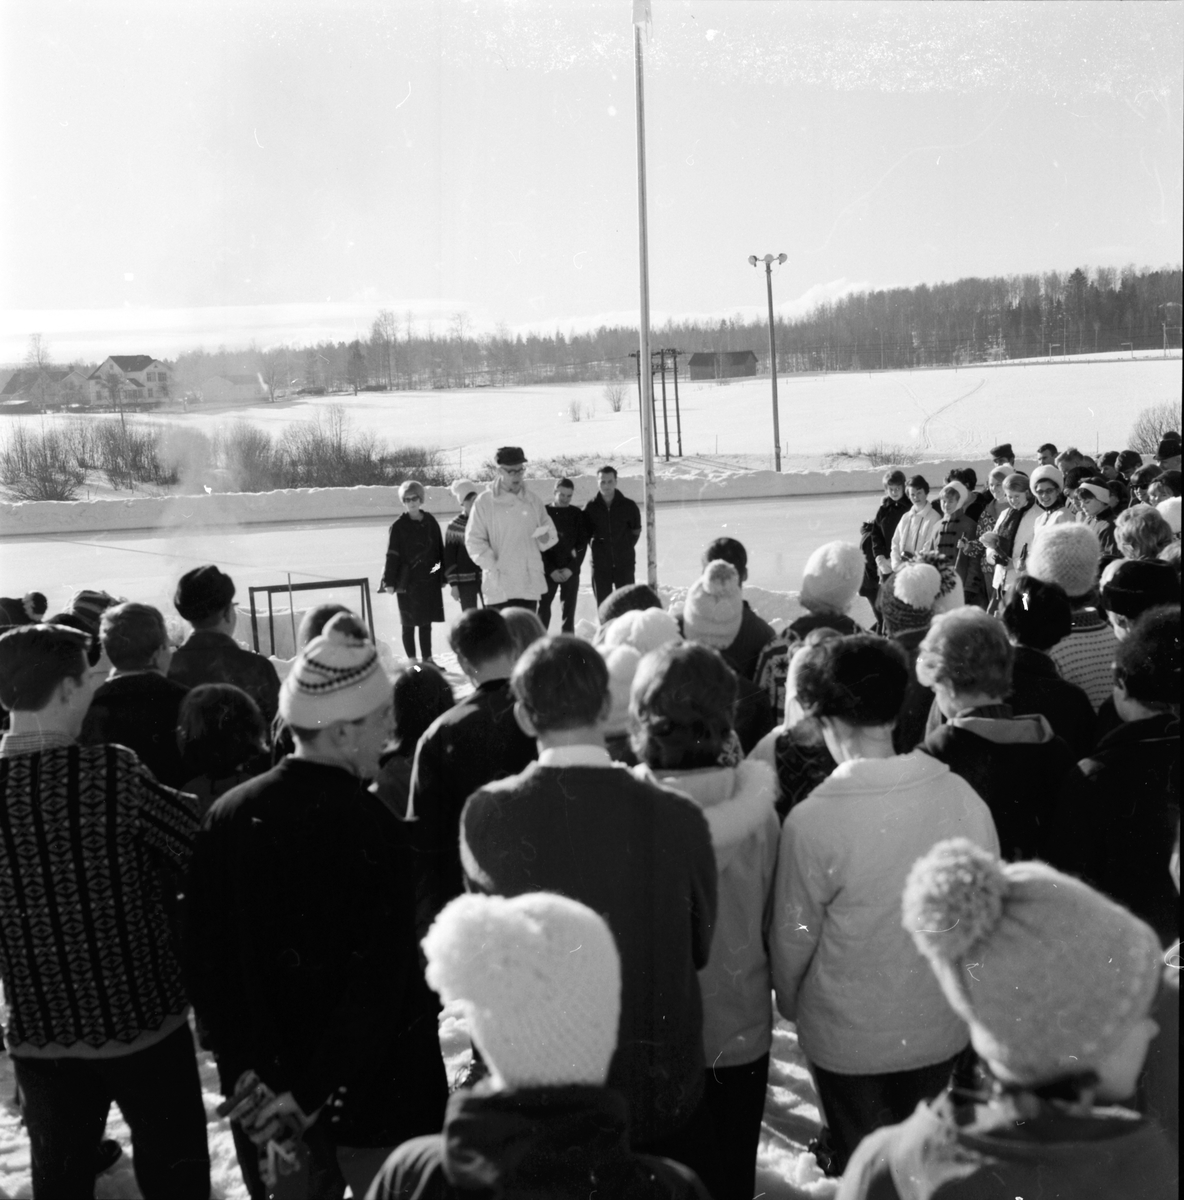 Folkhögskolan,
"Skololympiad"
20 Febr 1965